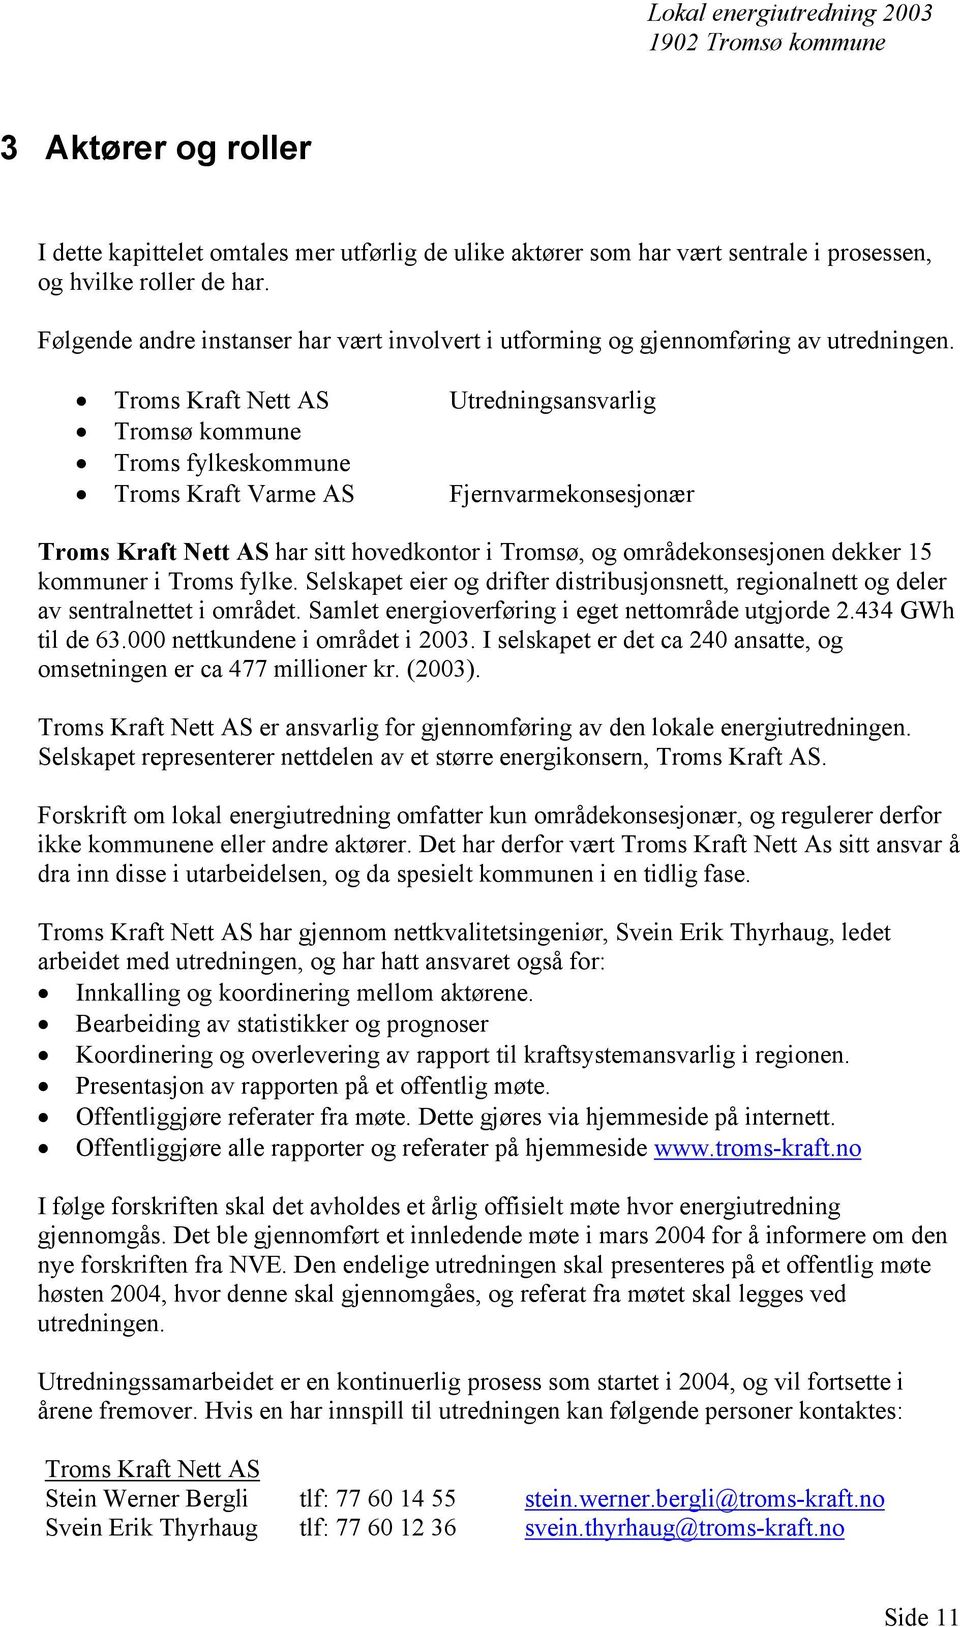 Troms Kraft Nett AS Utredningsansvarlig Tromsø kommune Troms fylkeskommune Troms Kraft Varme AS Fjernvarmekonsesjonær Troms Kraft Nett AS har sitt hovedkontor i Tromsø, og områdekonsesjonen dekker 15